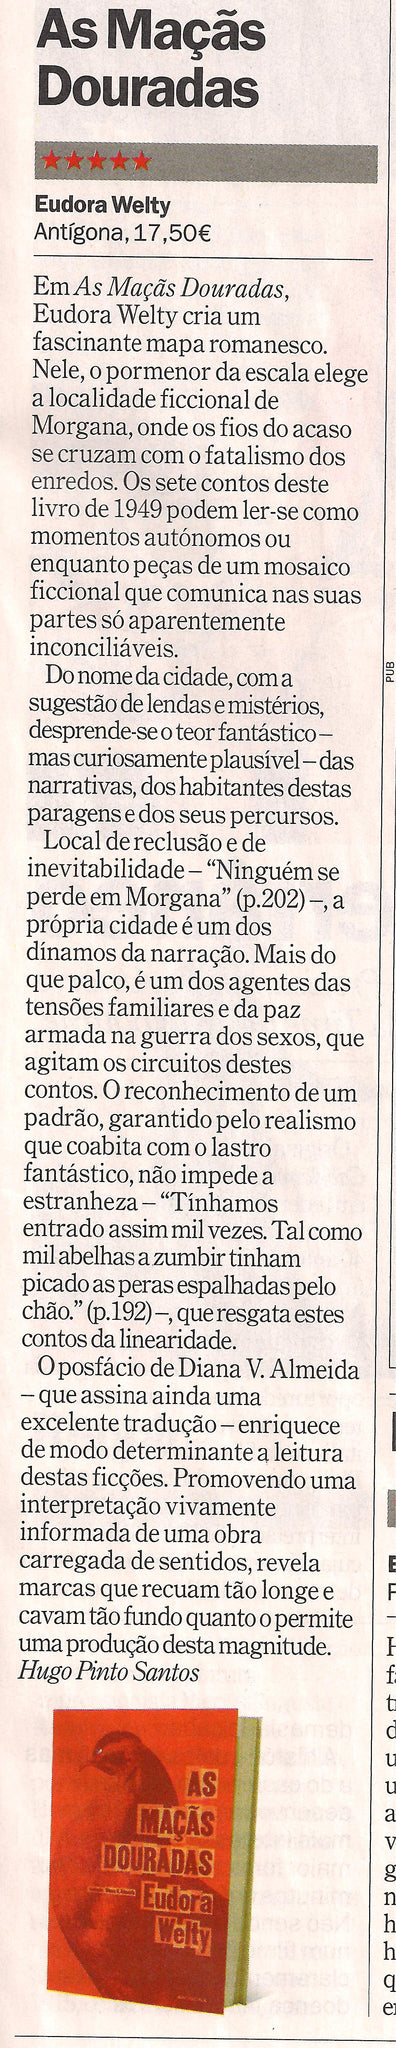 As Maçãs Douradas | Time Out Lisboa | Recensão de Hugo Pinto Santos | ★★★★★